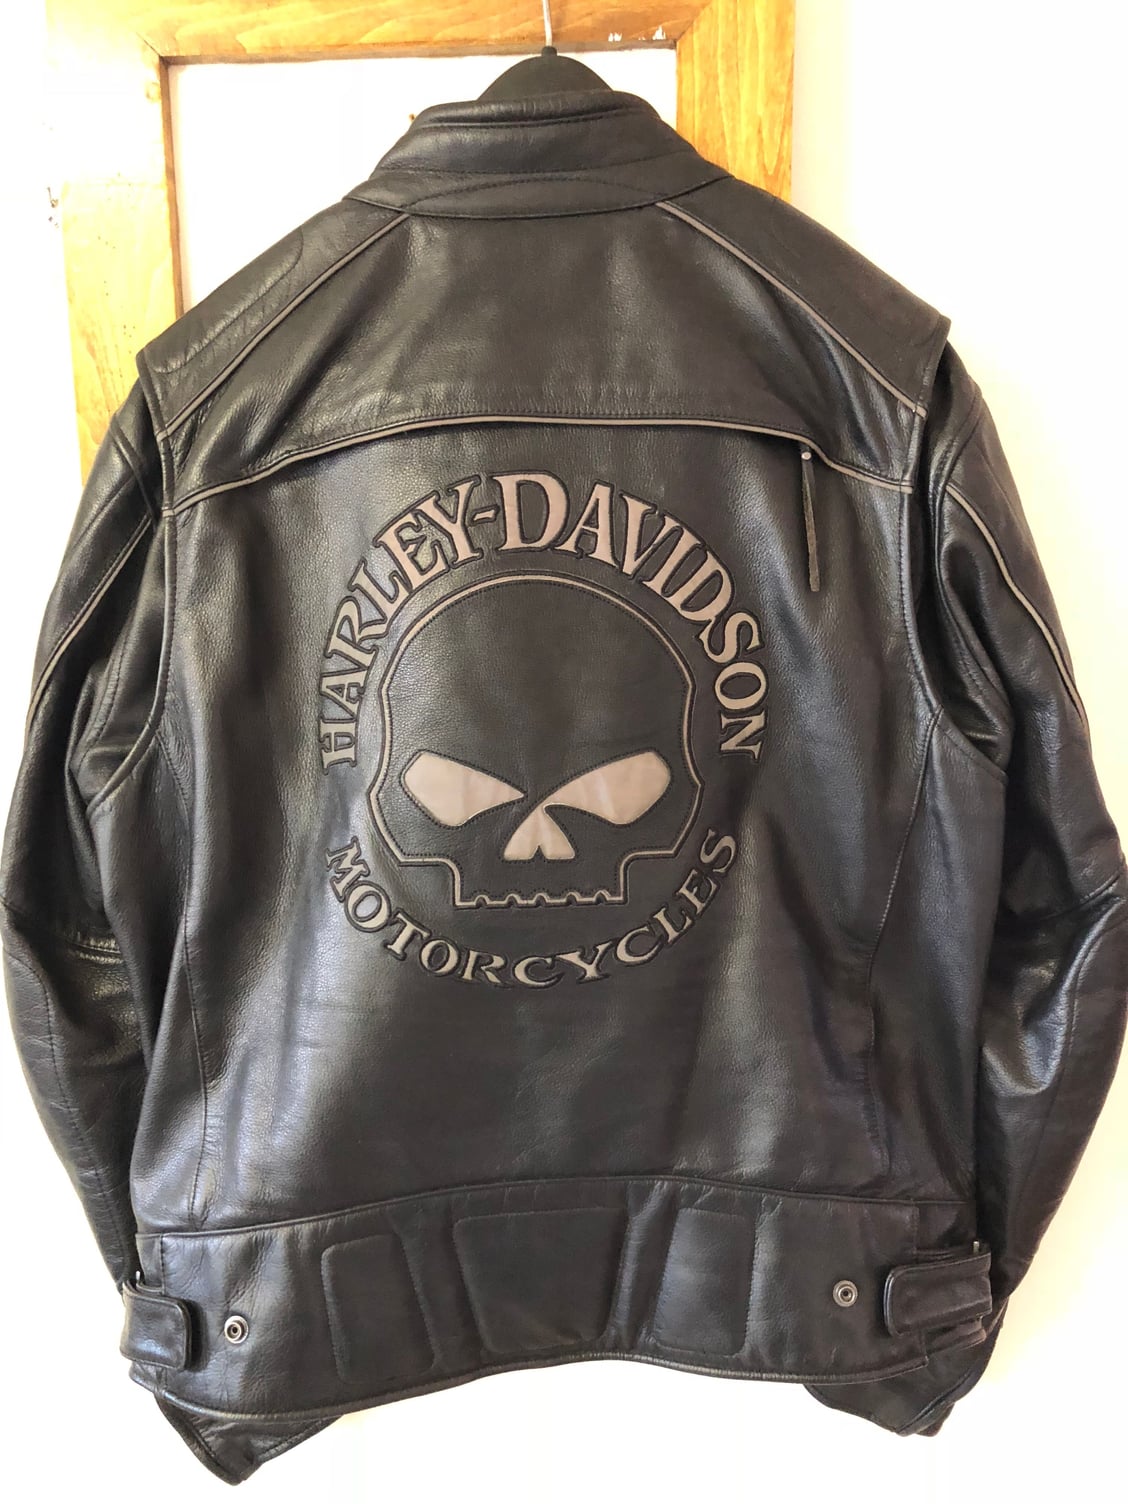 Harley Davidson Willie G leather jacket - Harley Davidson Forums